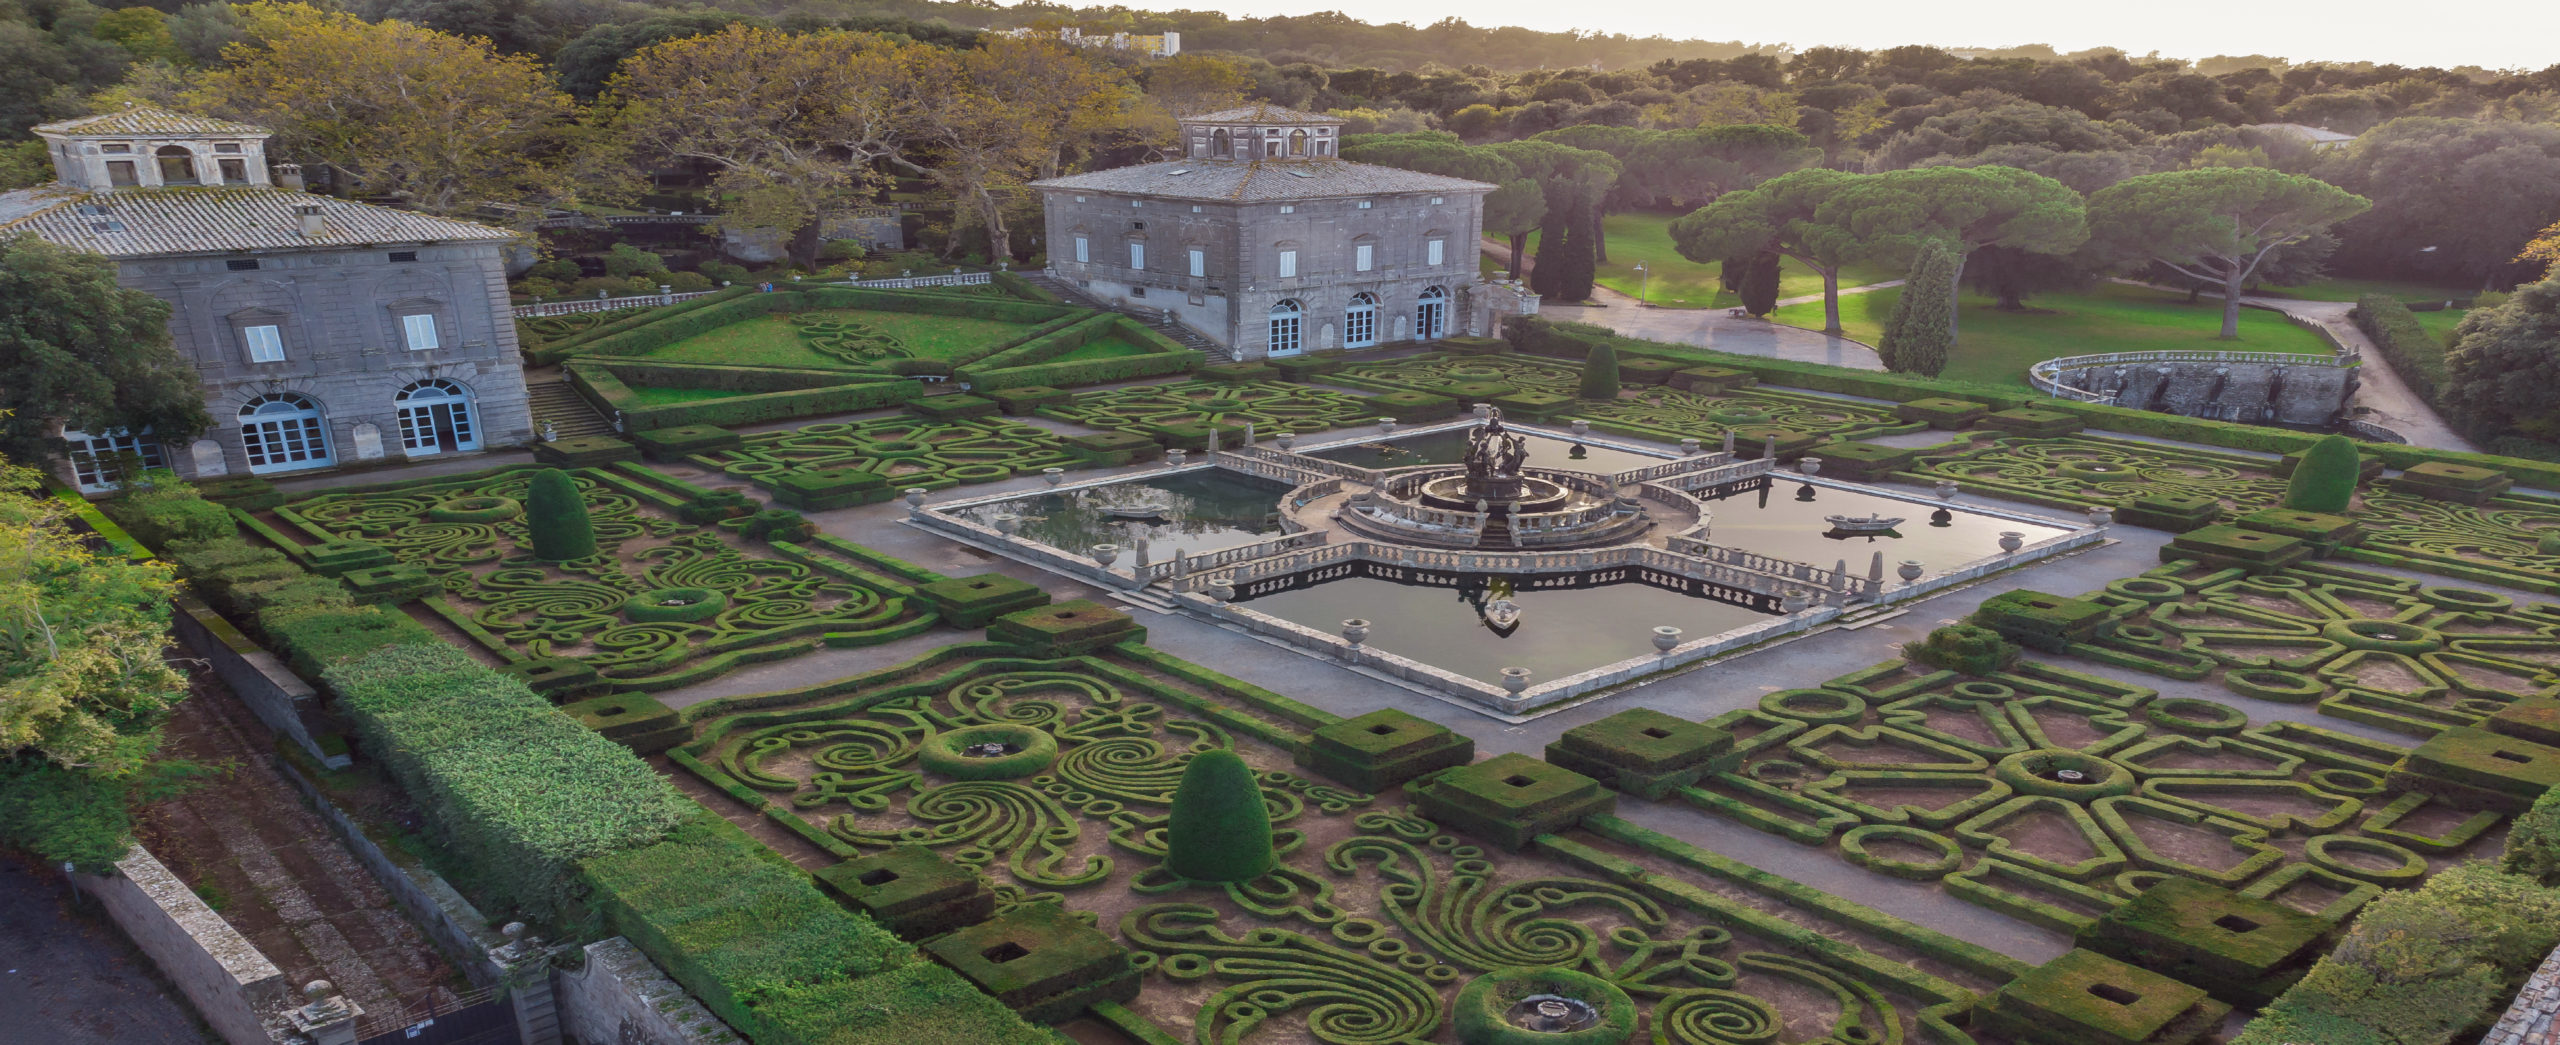 Bagnaia - VT - Veduta aerea del giardino formale di Villa Lante e fontana dei Mori (ph. M. Mascellini)